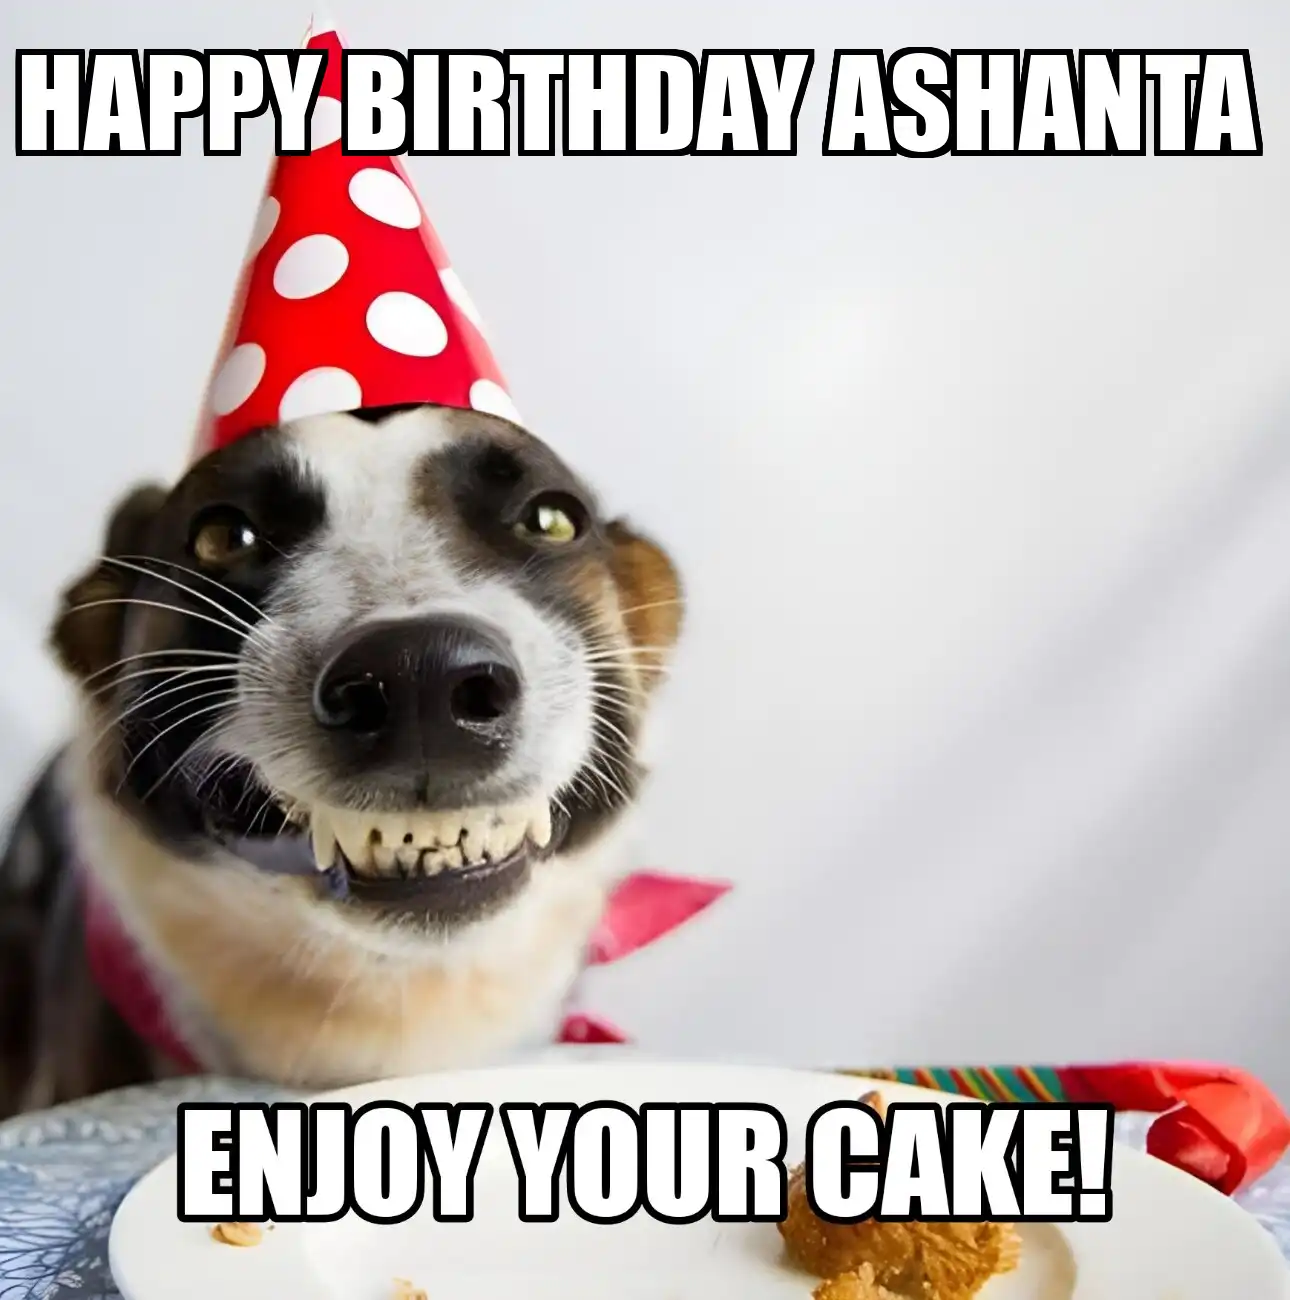 Happy Birthday Ashanta Enjoy Your Cake Dog Meme